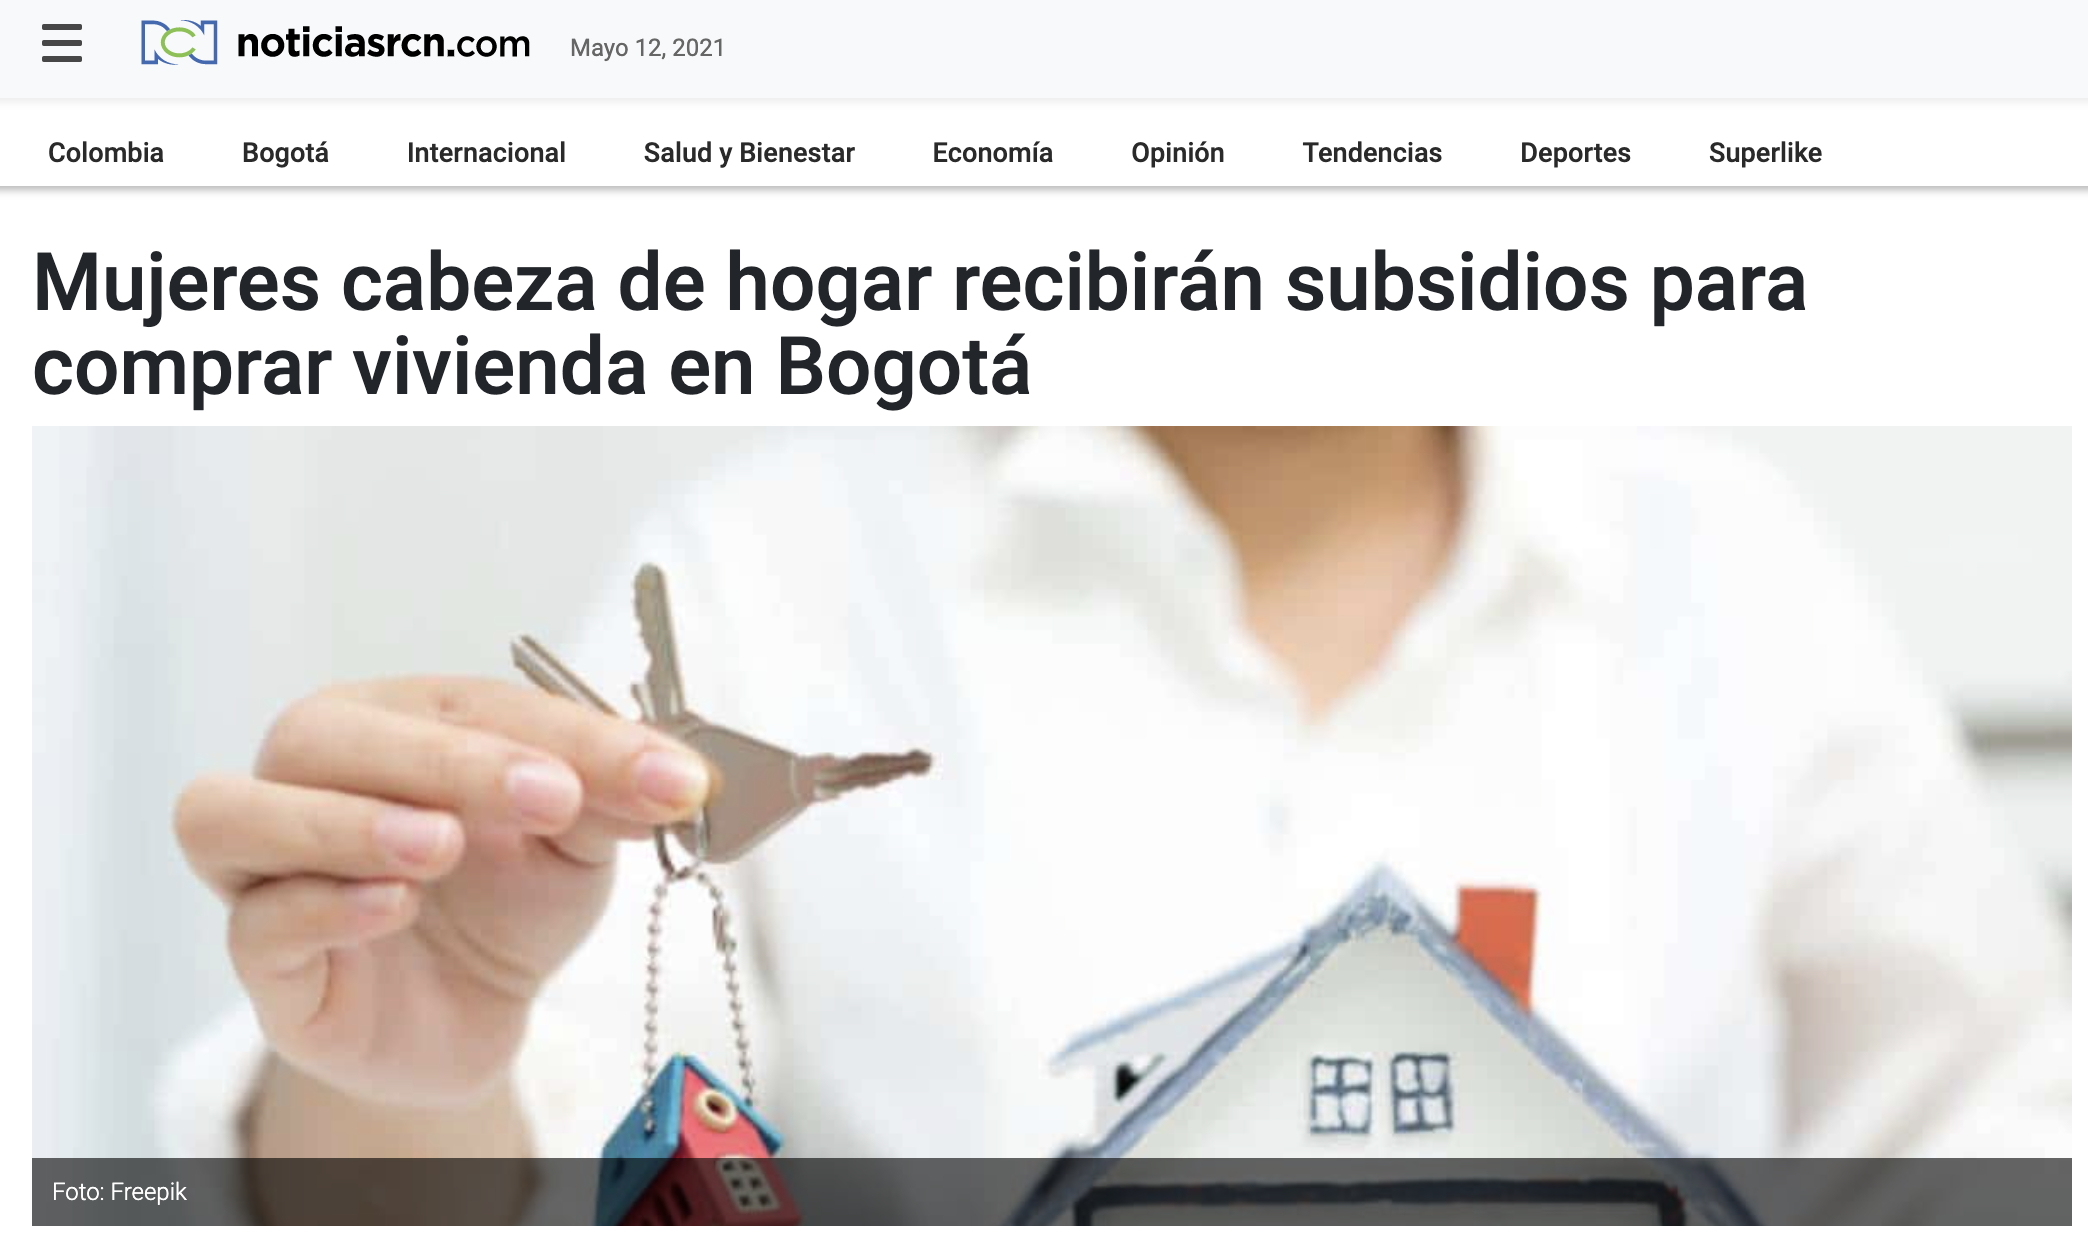 Mujeres cabeza de hogar recibirán subsidios para comprar vivienda en Bogotá